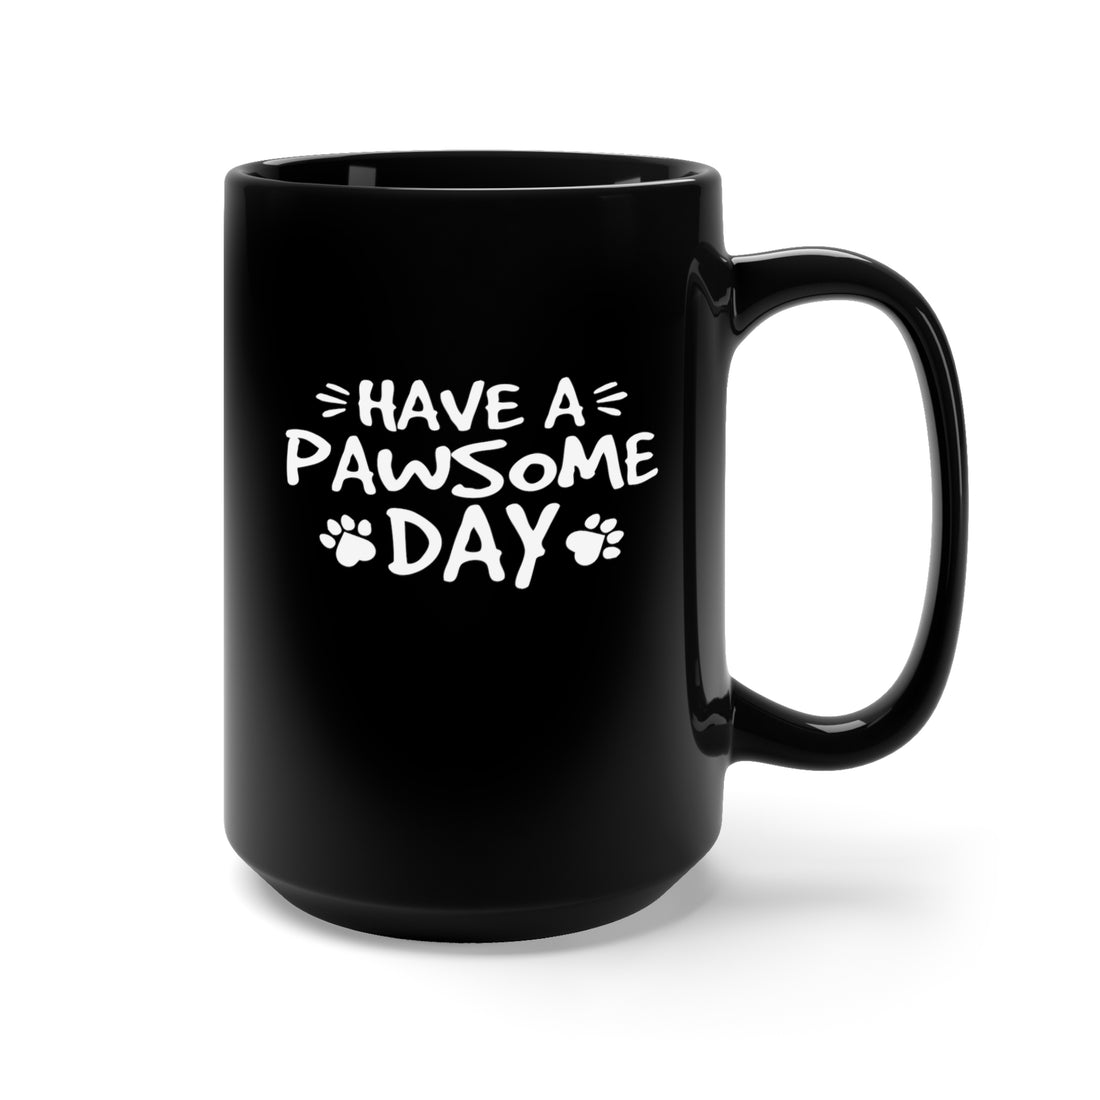 Have A Pawsome Day - Large 15oz Black Mug